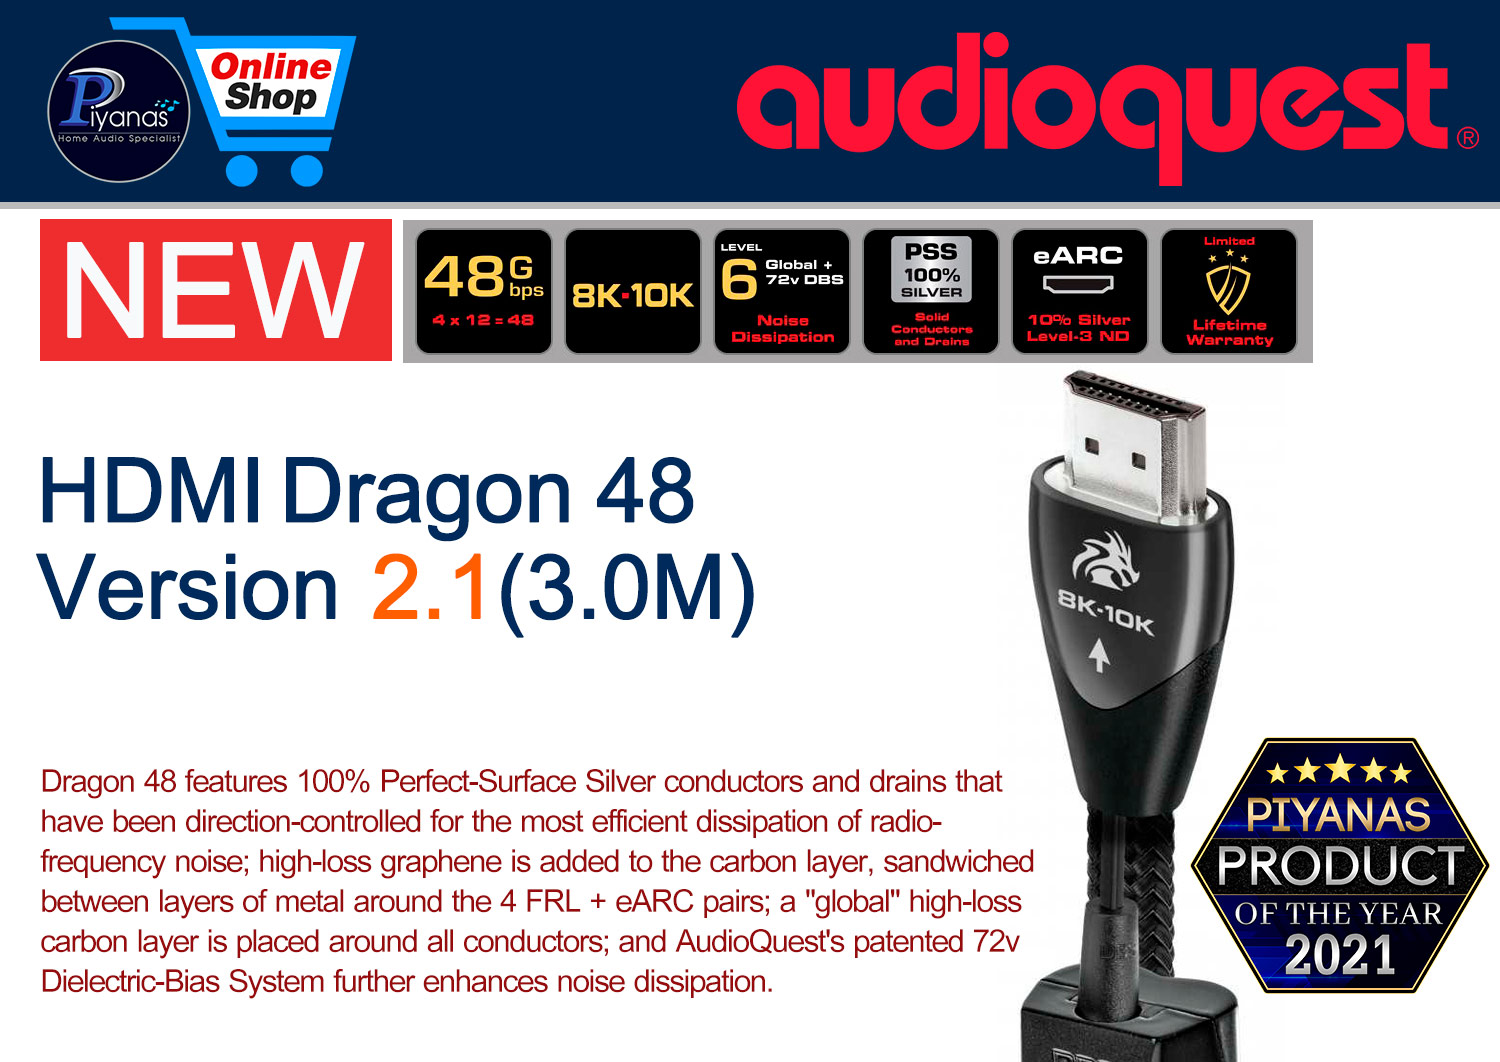 HDMI-Dragon 48 Version 2.1 (3.0M)